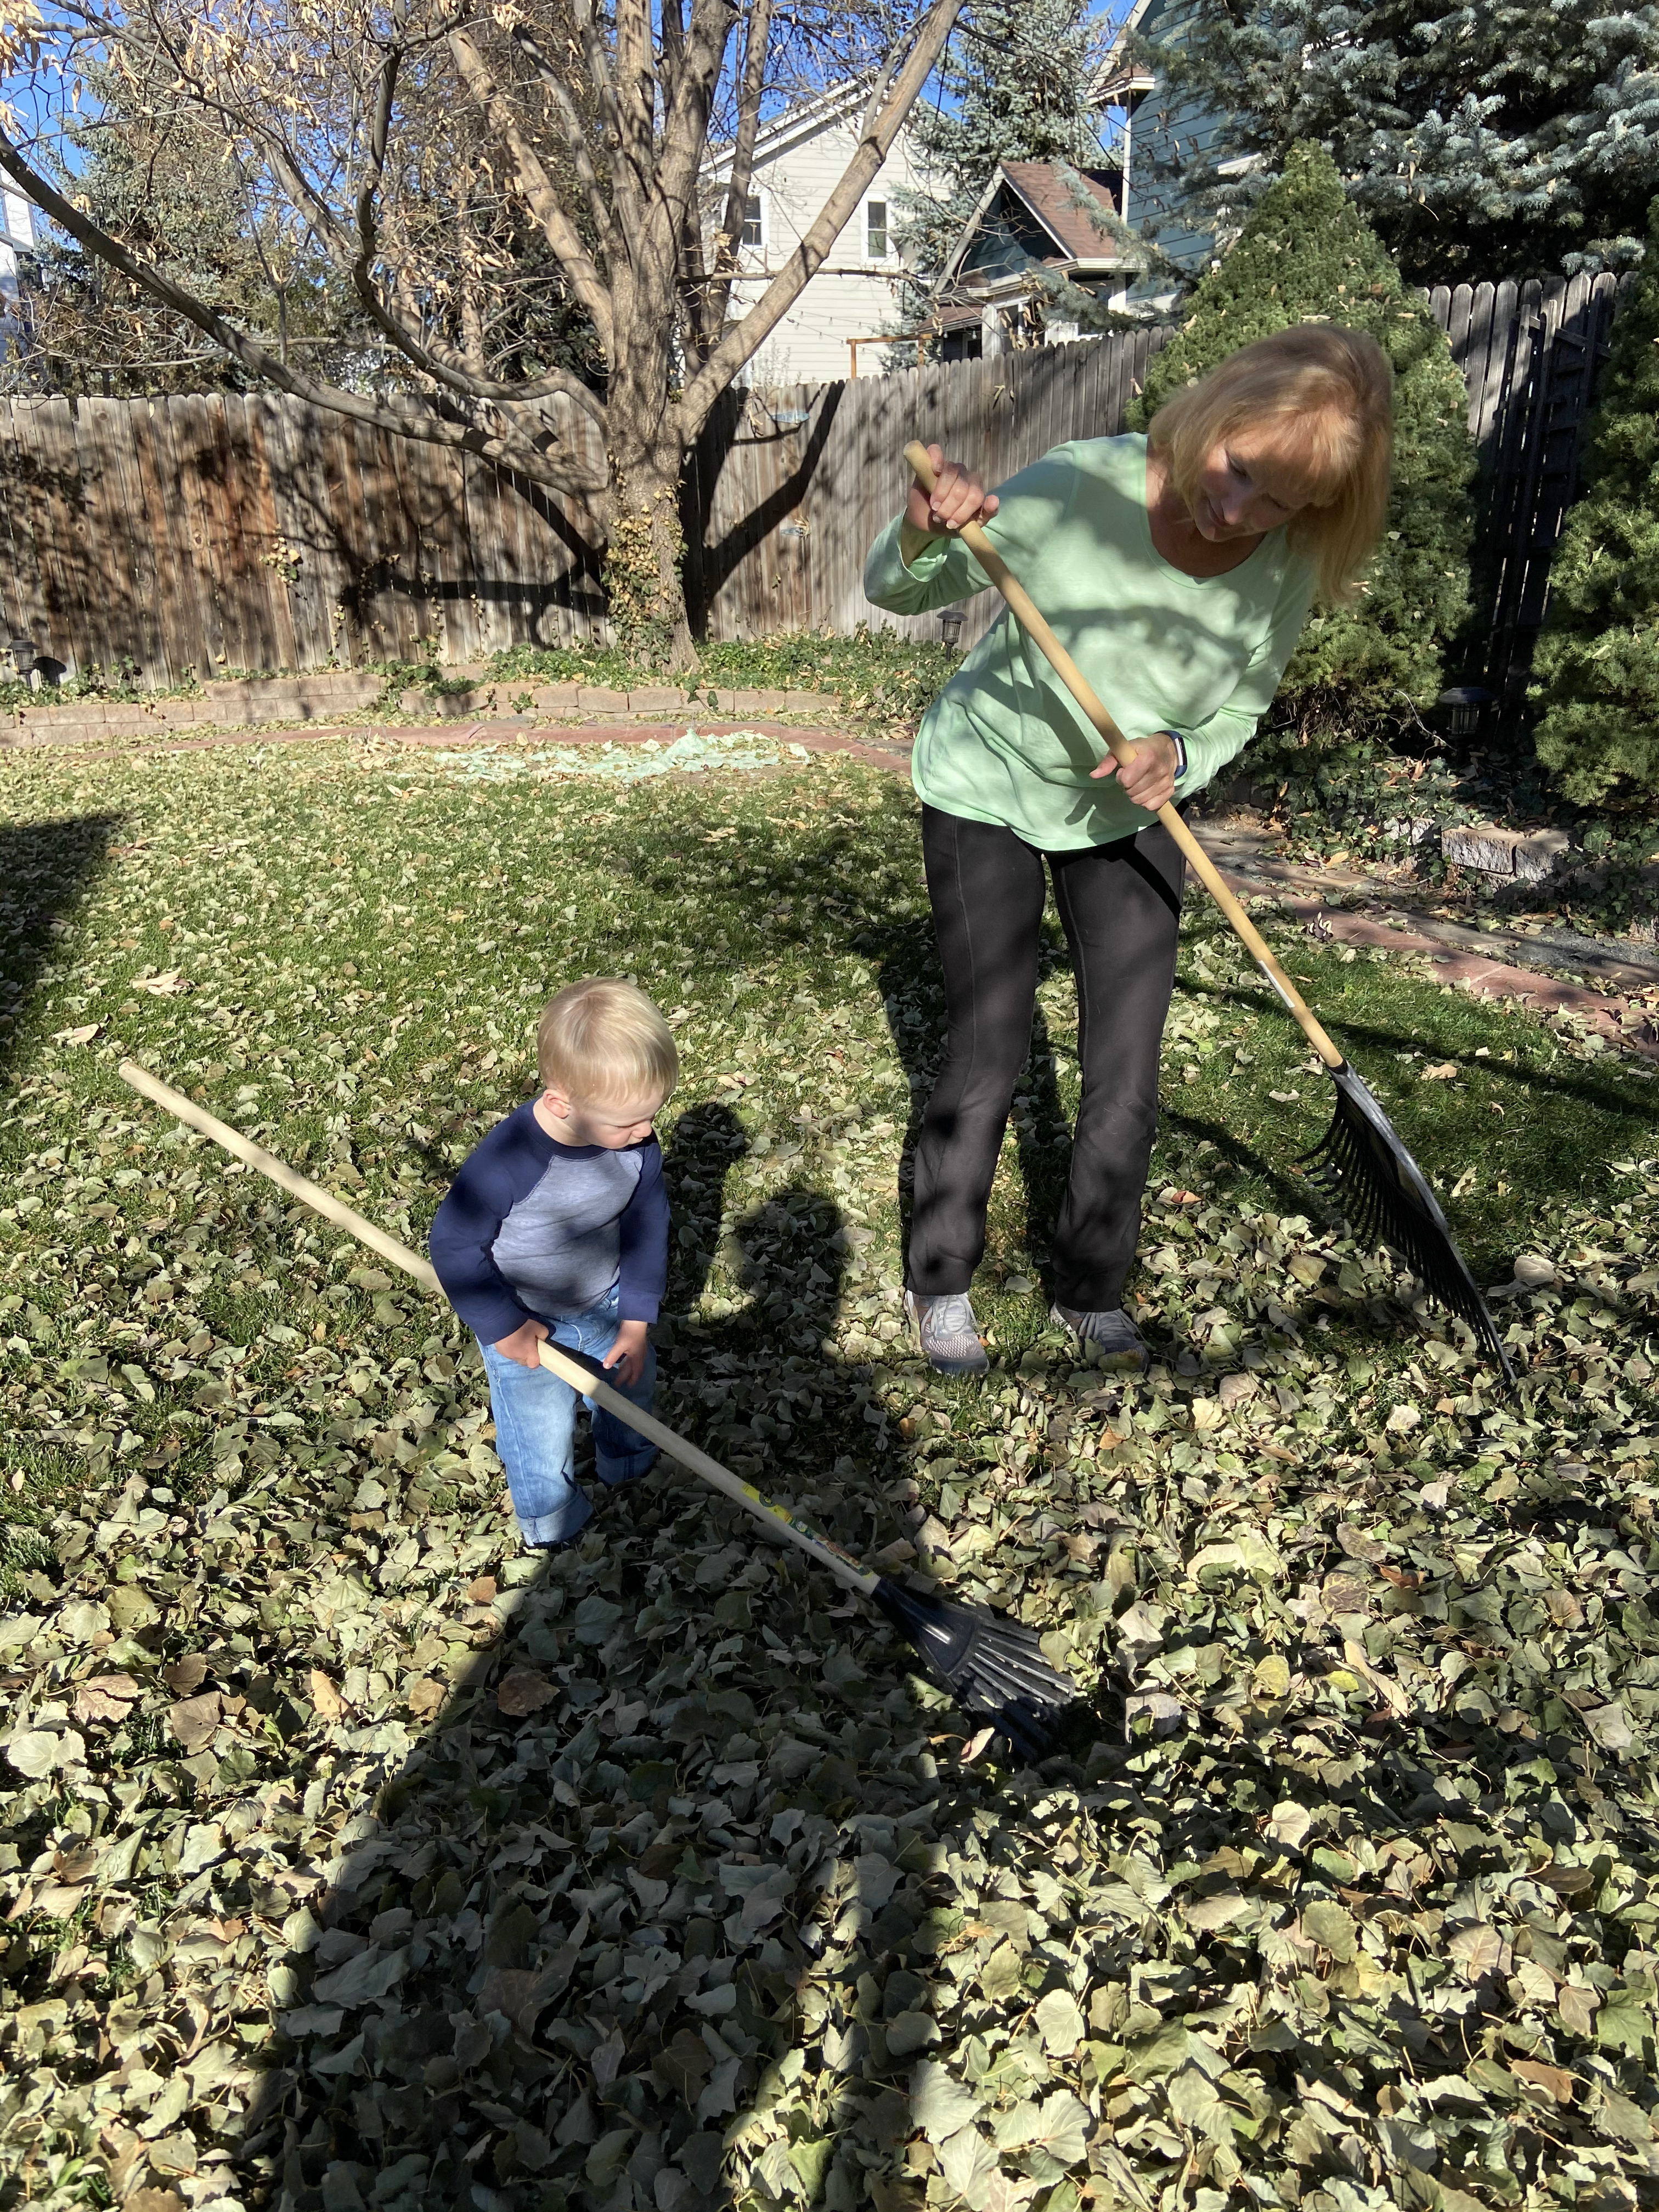 Owen raking leaves with Grandma Vickie.